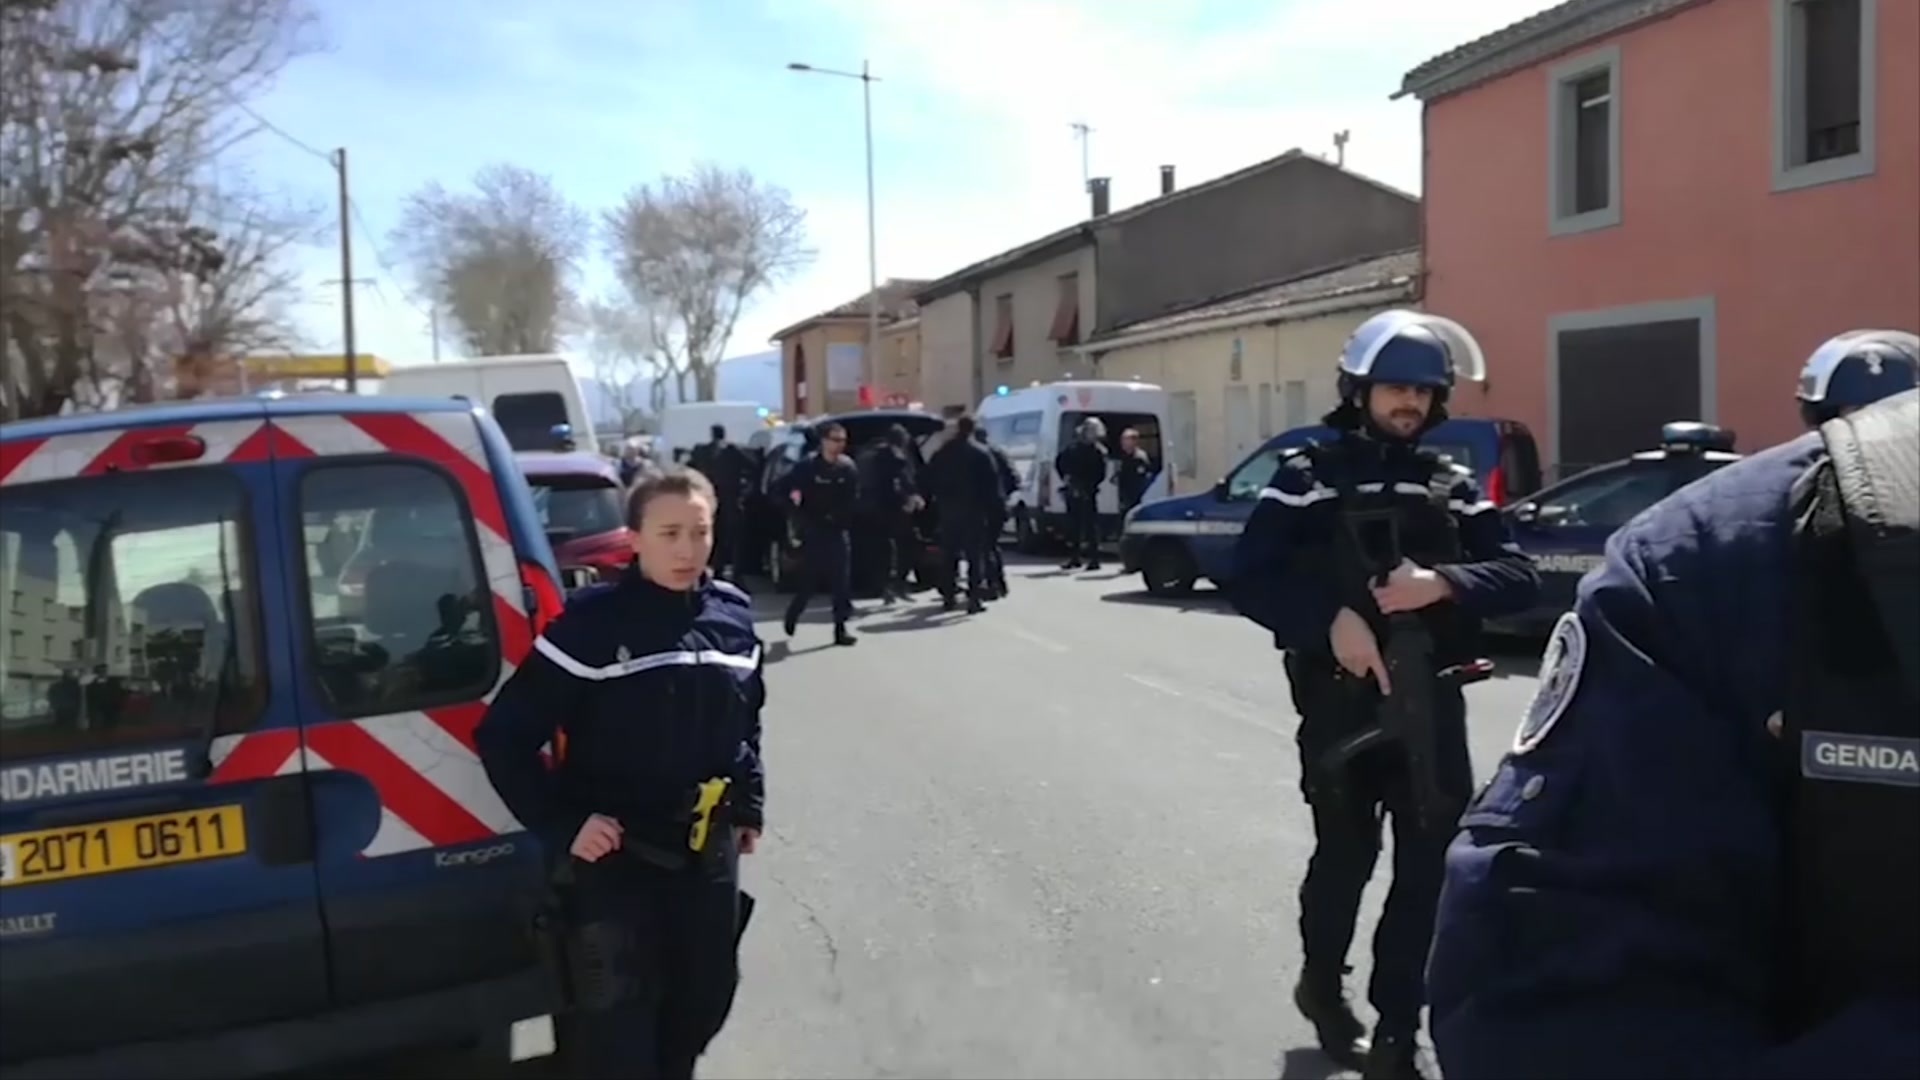  Francia: Dos muertos y 12 heridos en toma de rehenes